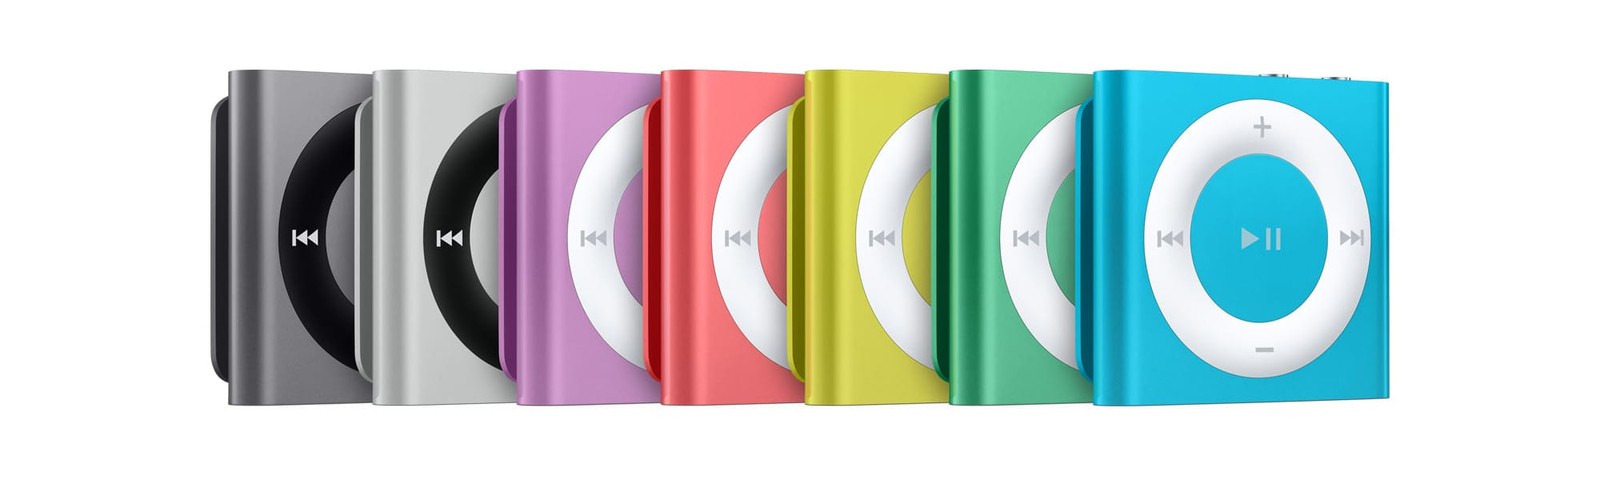 iPod-y nano i shuffle odchodzą do historii